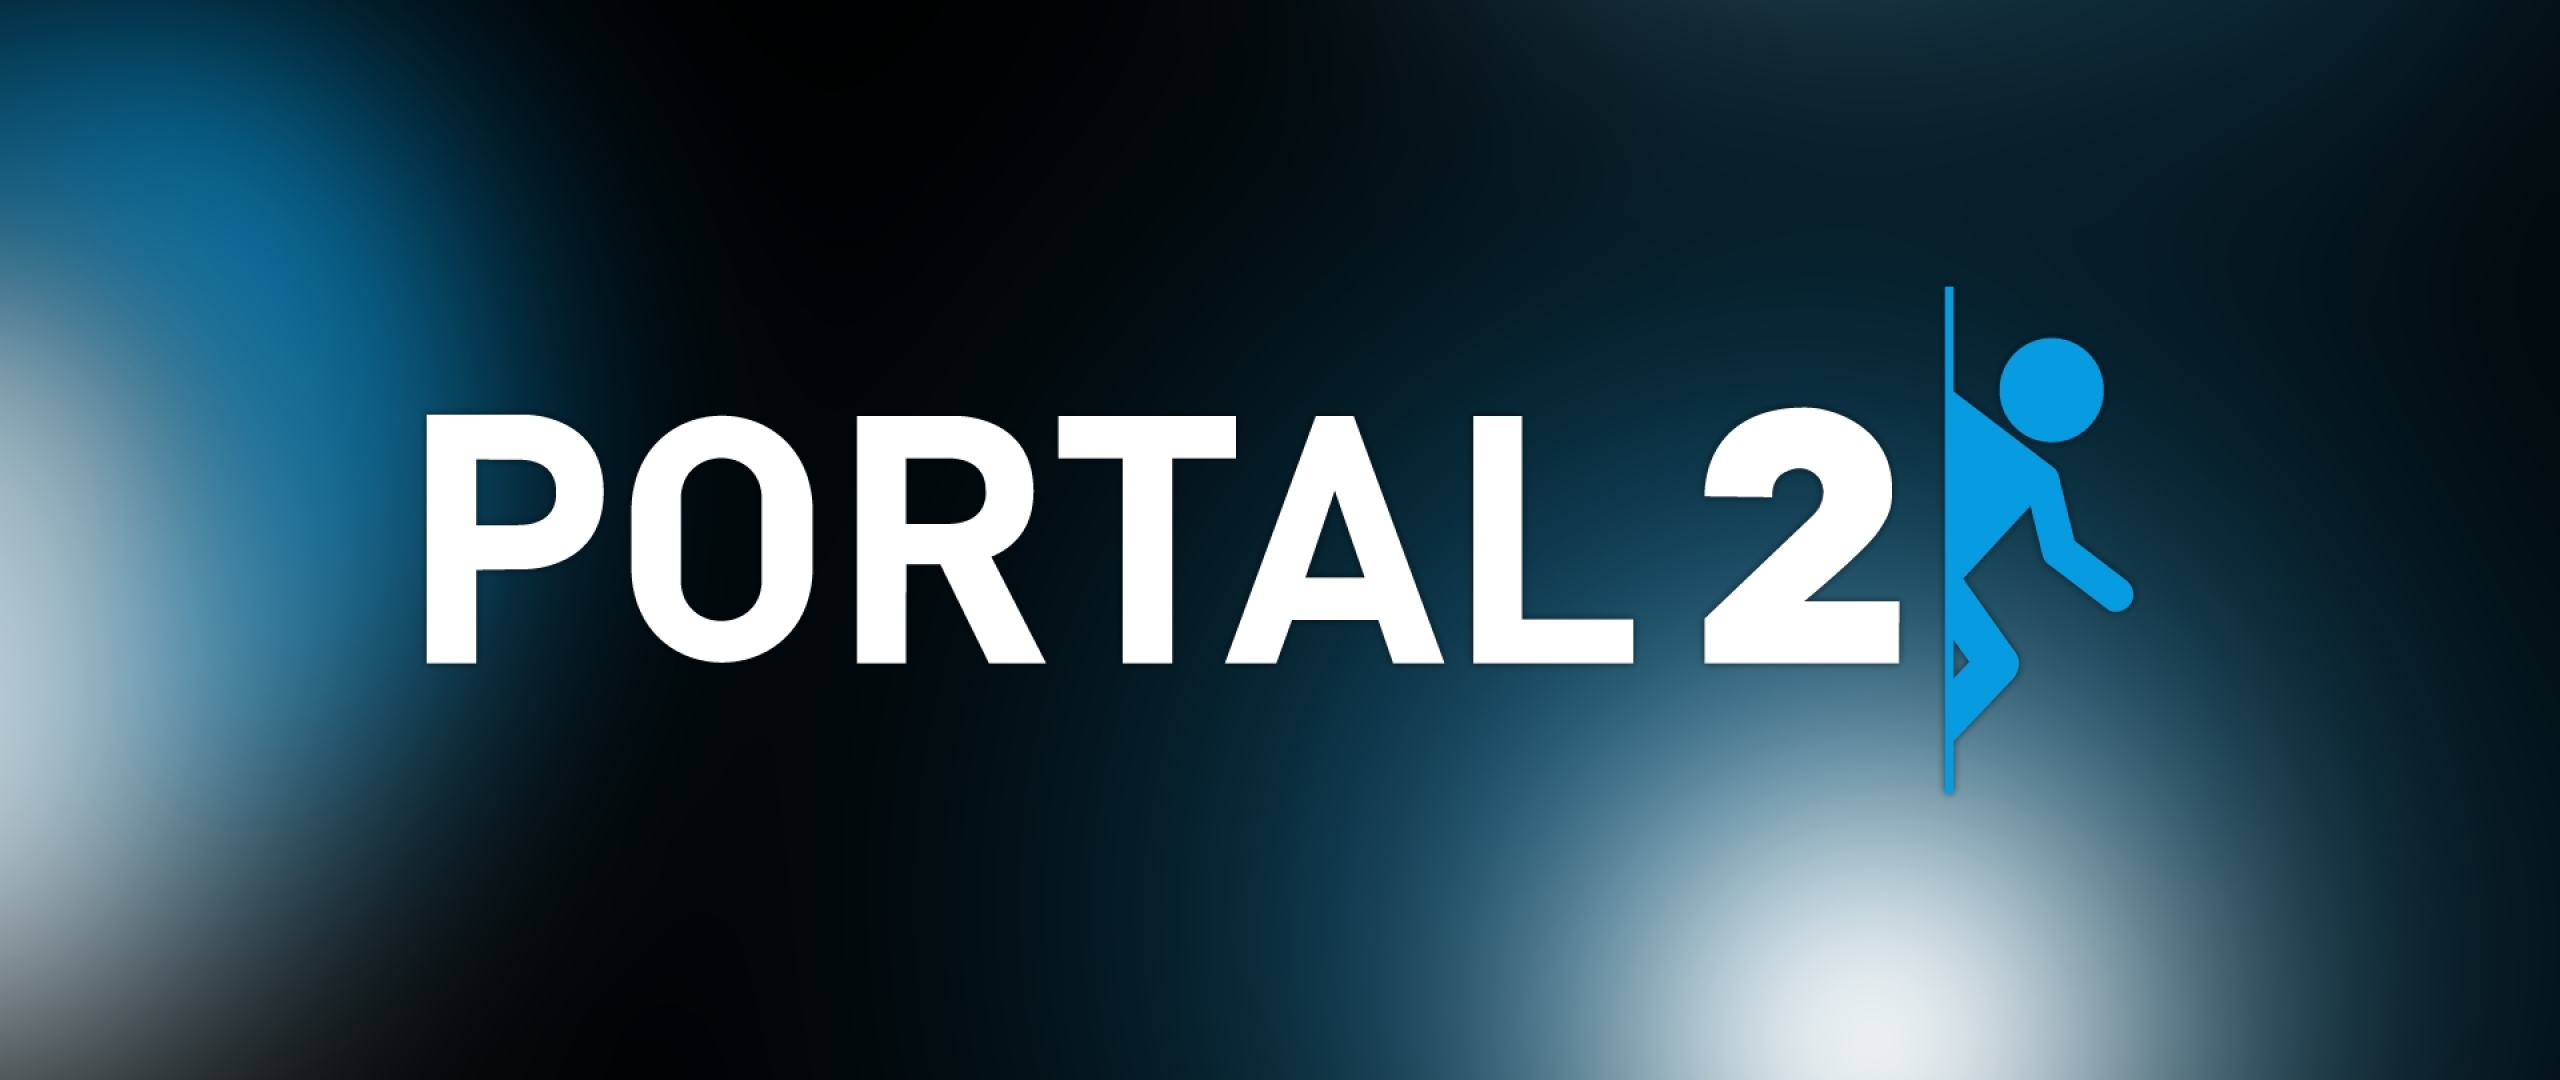 Portal 2 для mac os фото 73